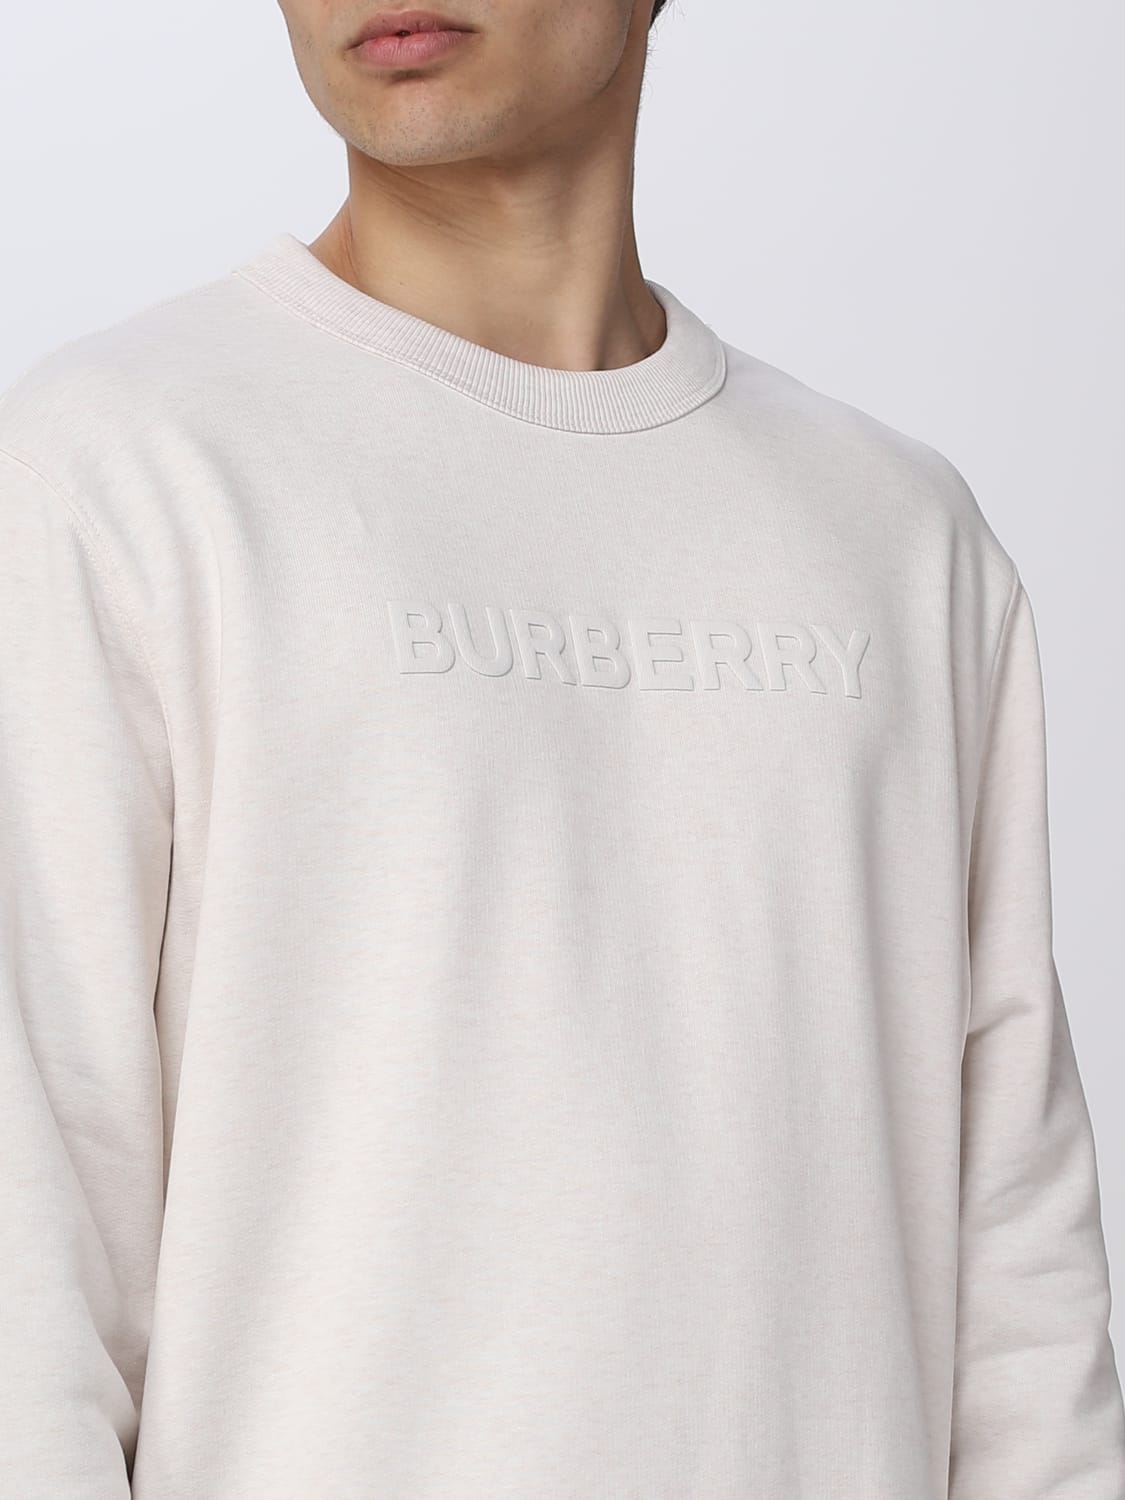 Burberryアウトレット：スウェットシャツ メンズ - ホワイト | GIGLIO